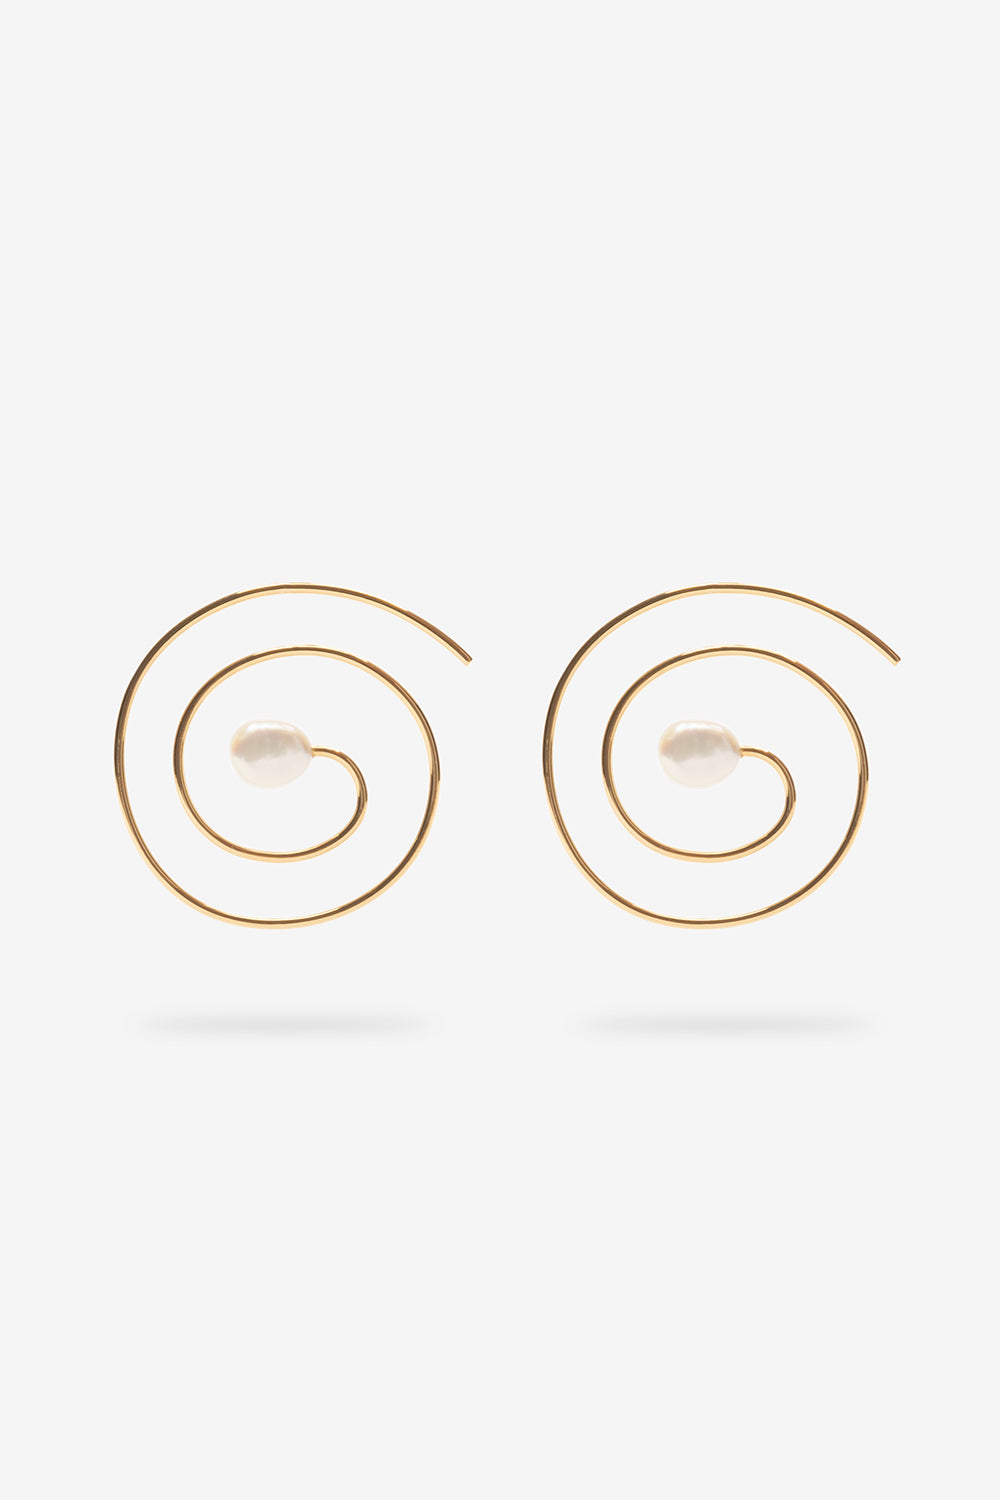 Swirl Spiral Earrings - 14k Vermeil